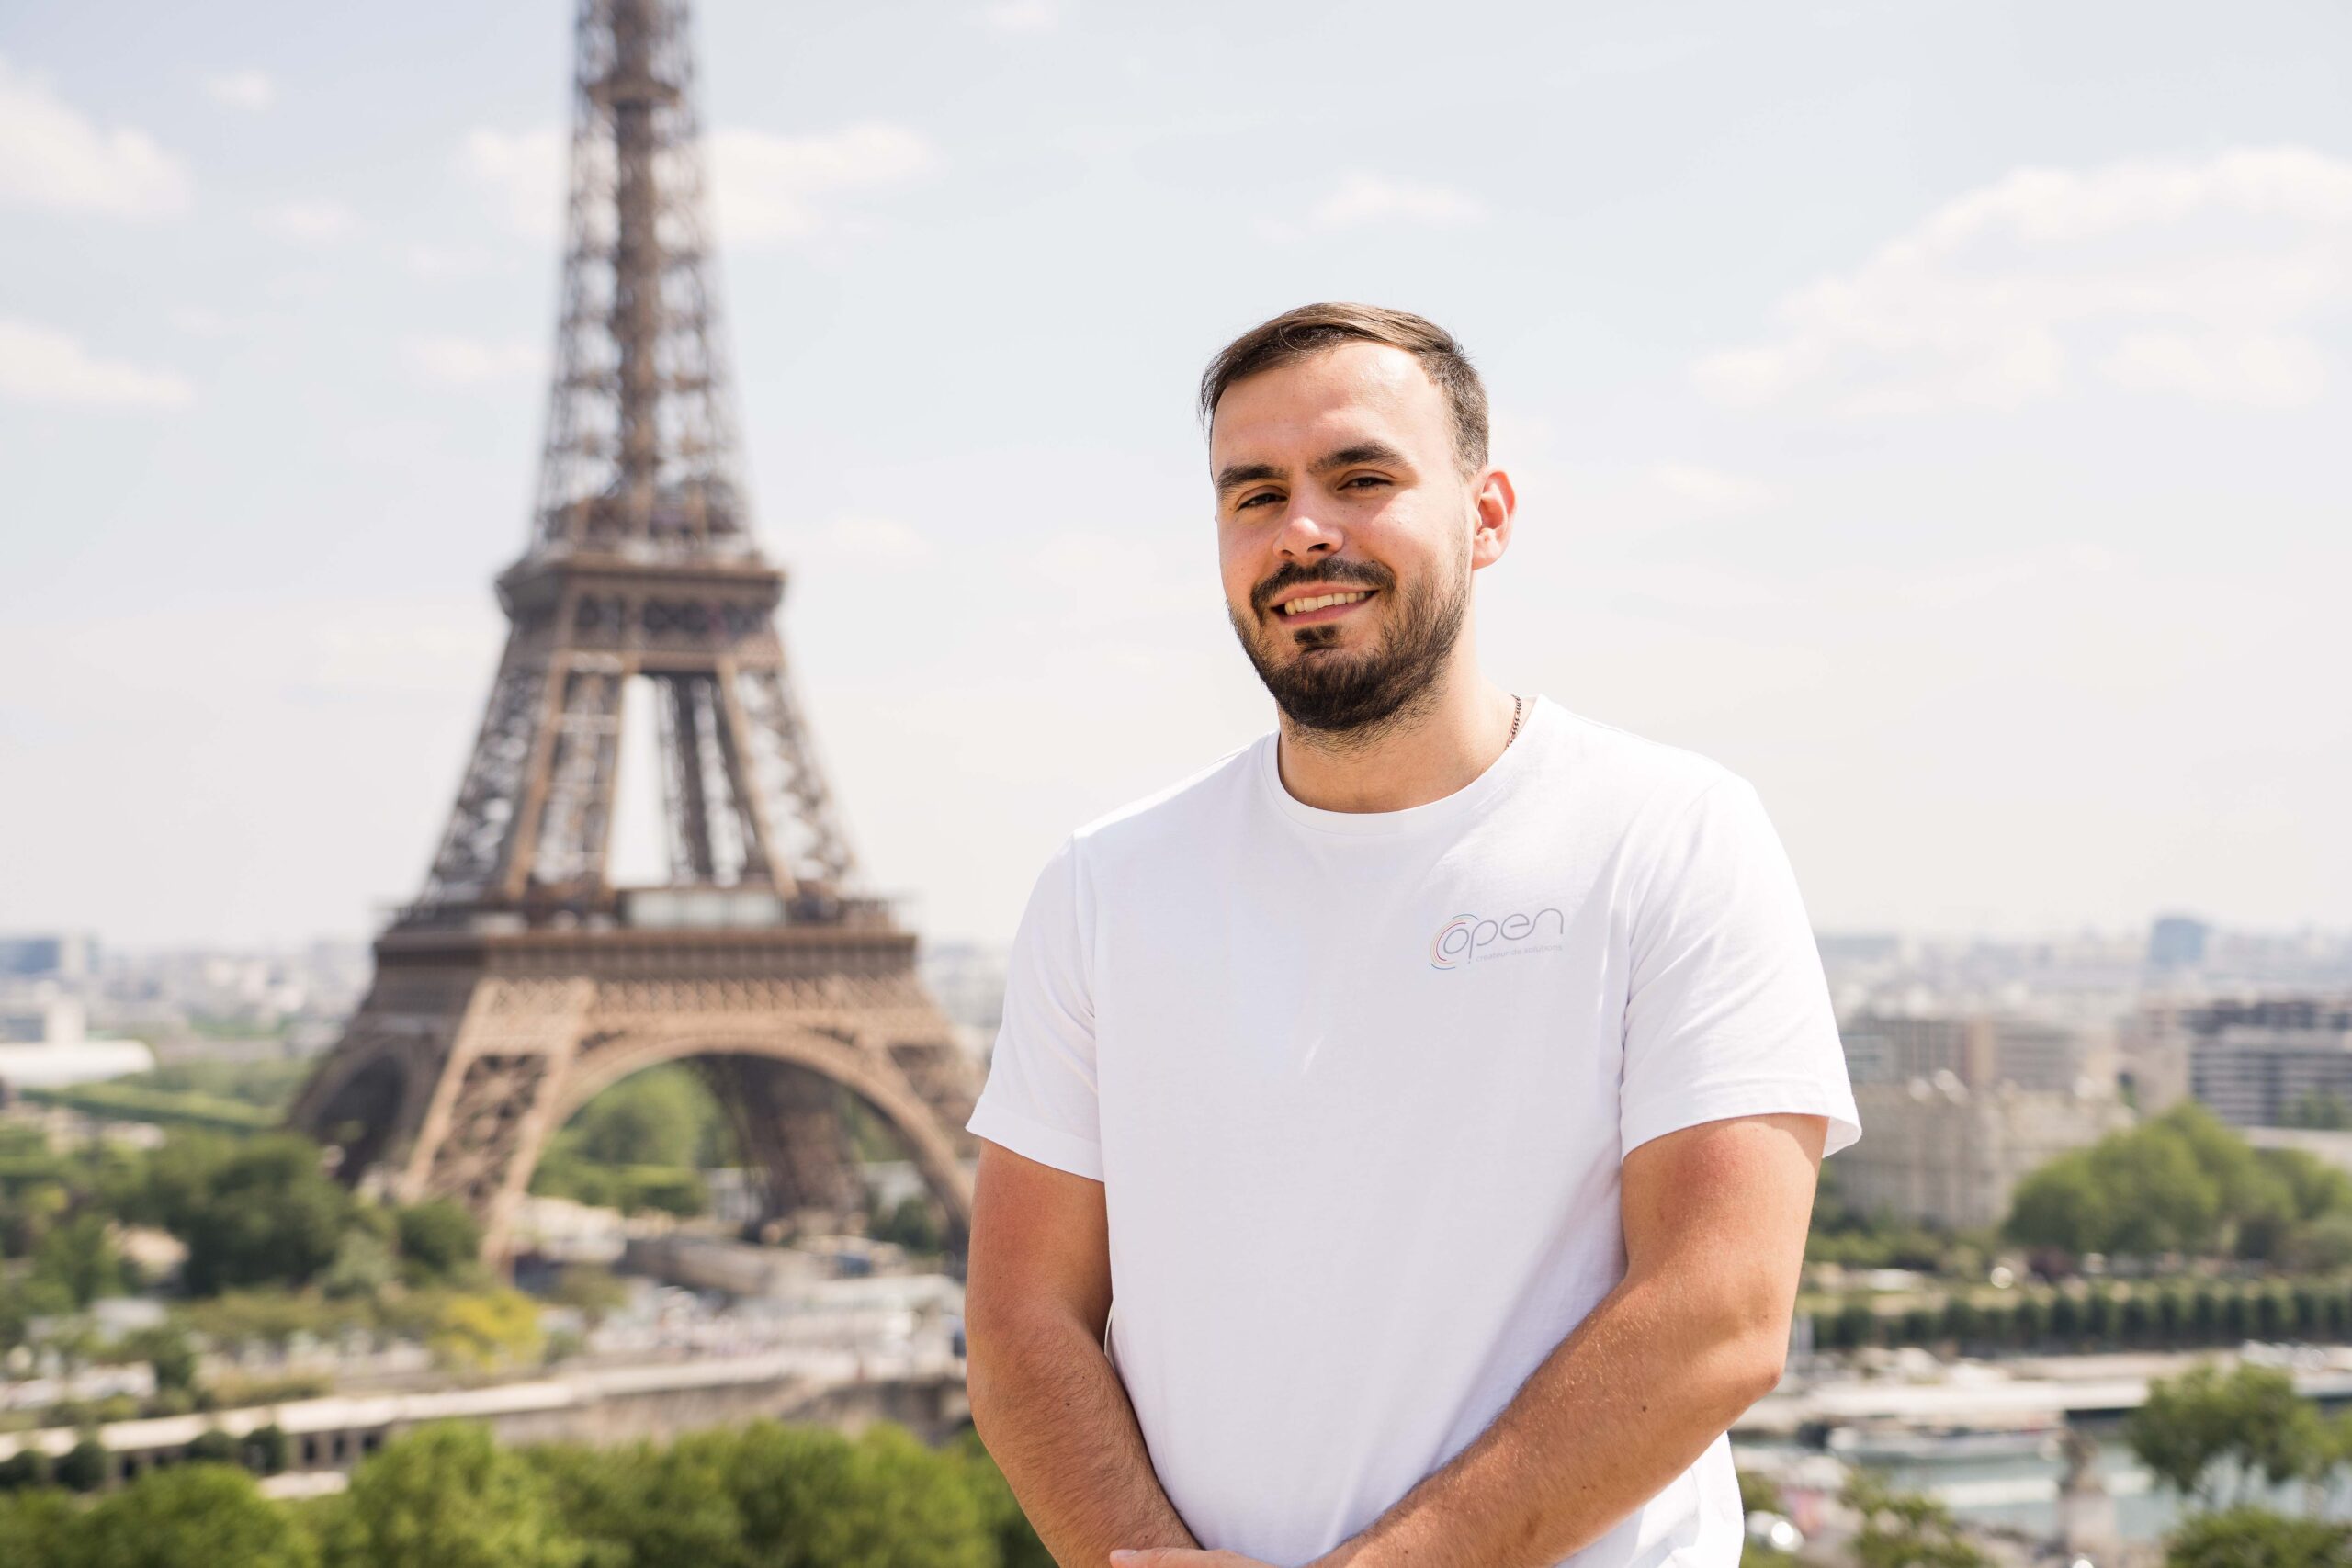 Un homme debout devant la tour Eiffel, vêtu d'un tee shirt blanche.